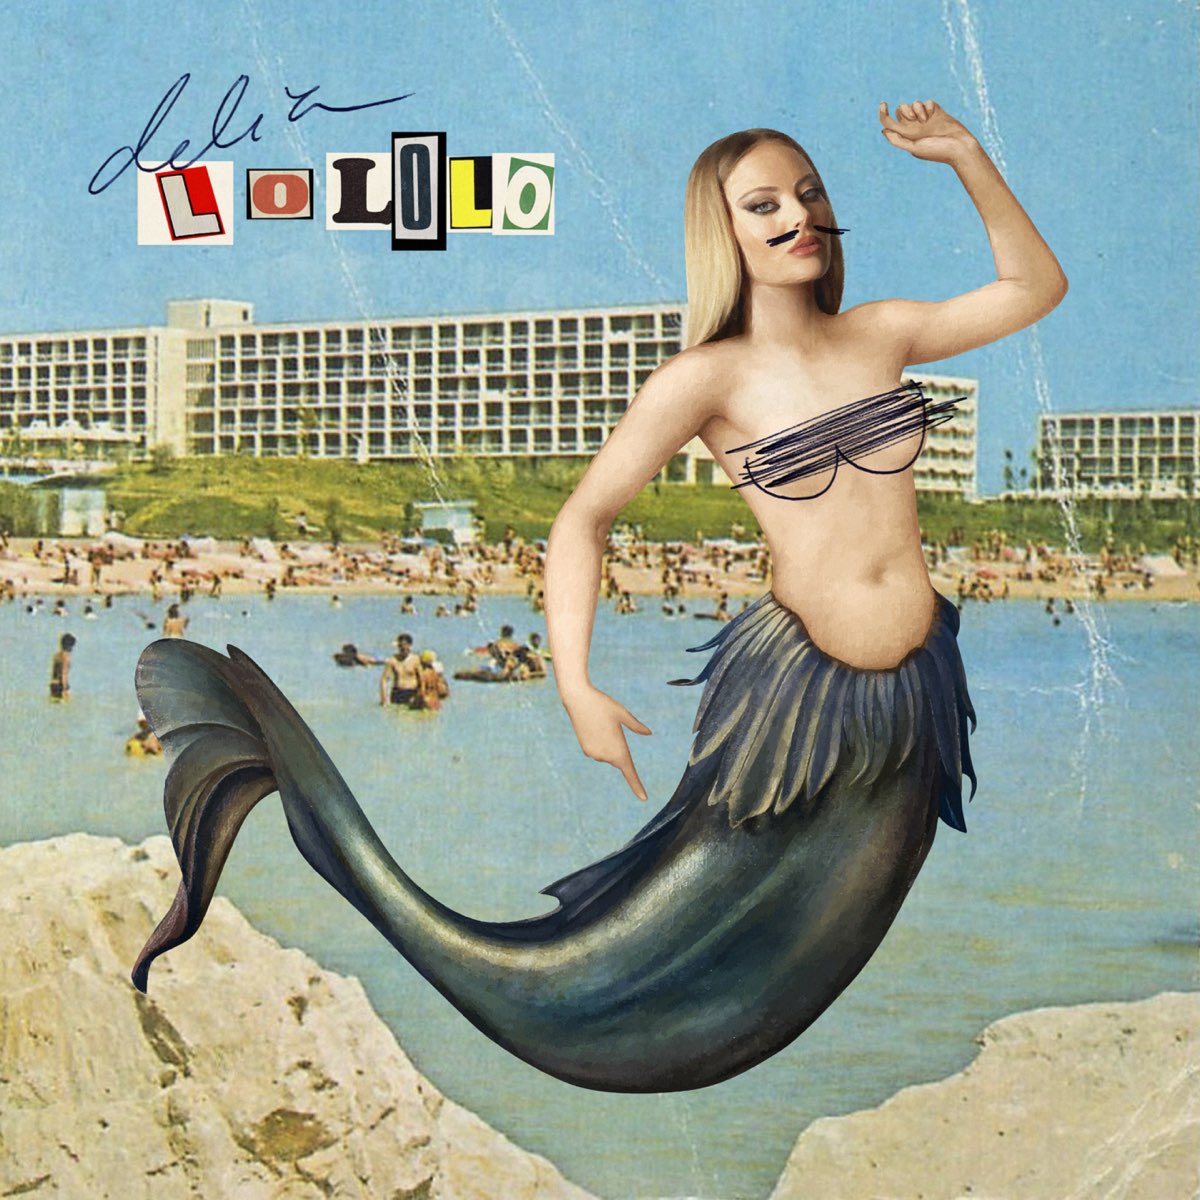 Delia — Lololo cover artwork